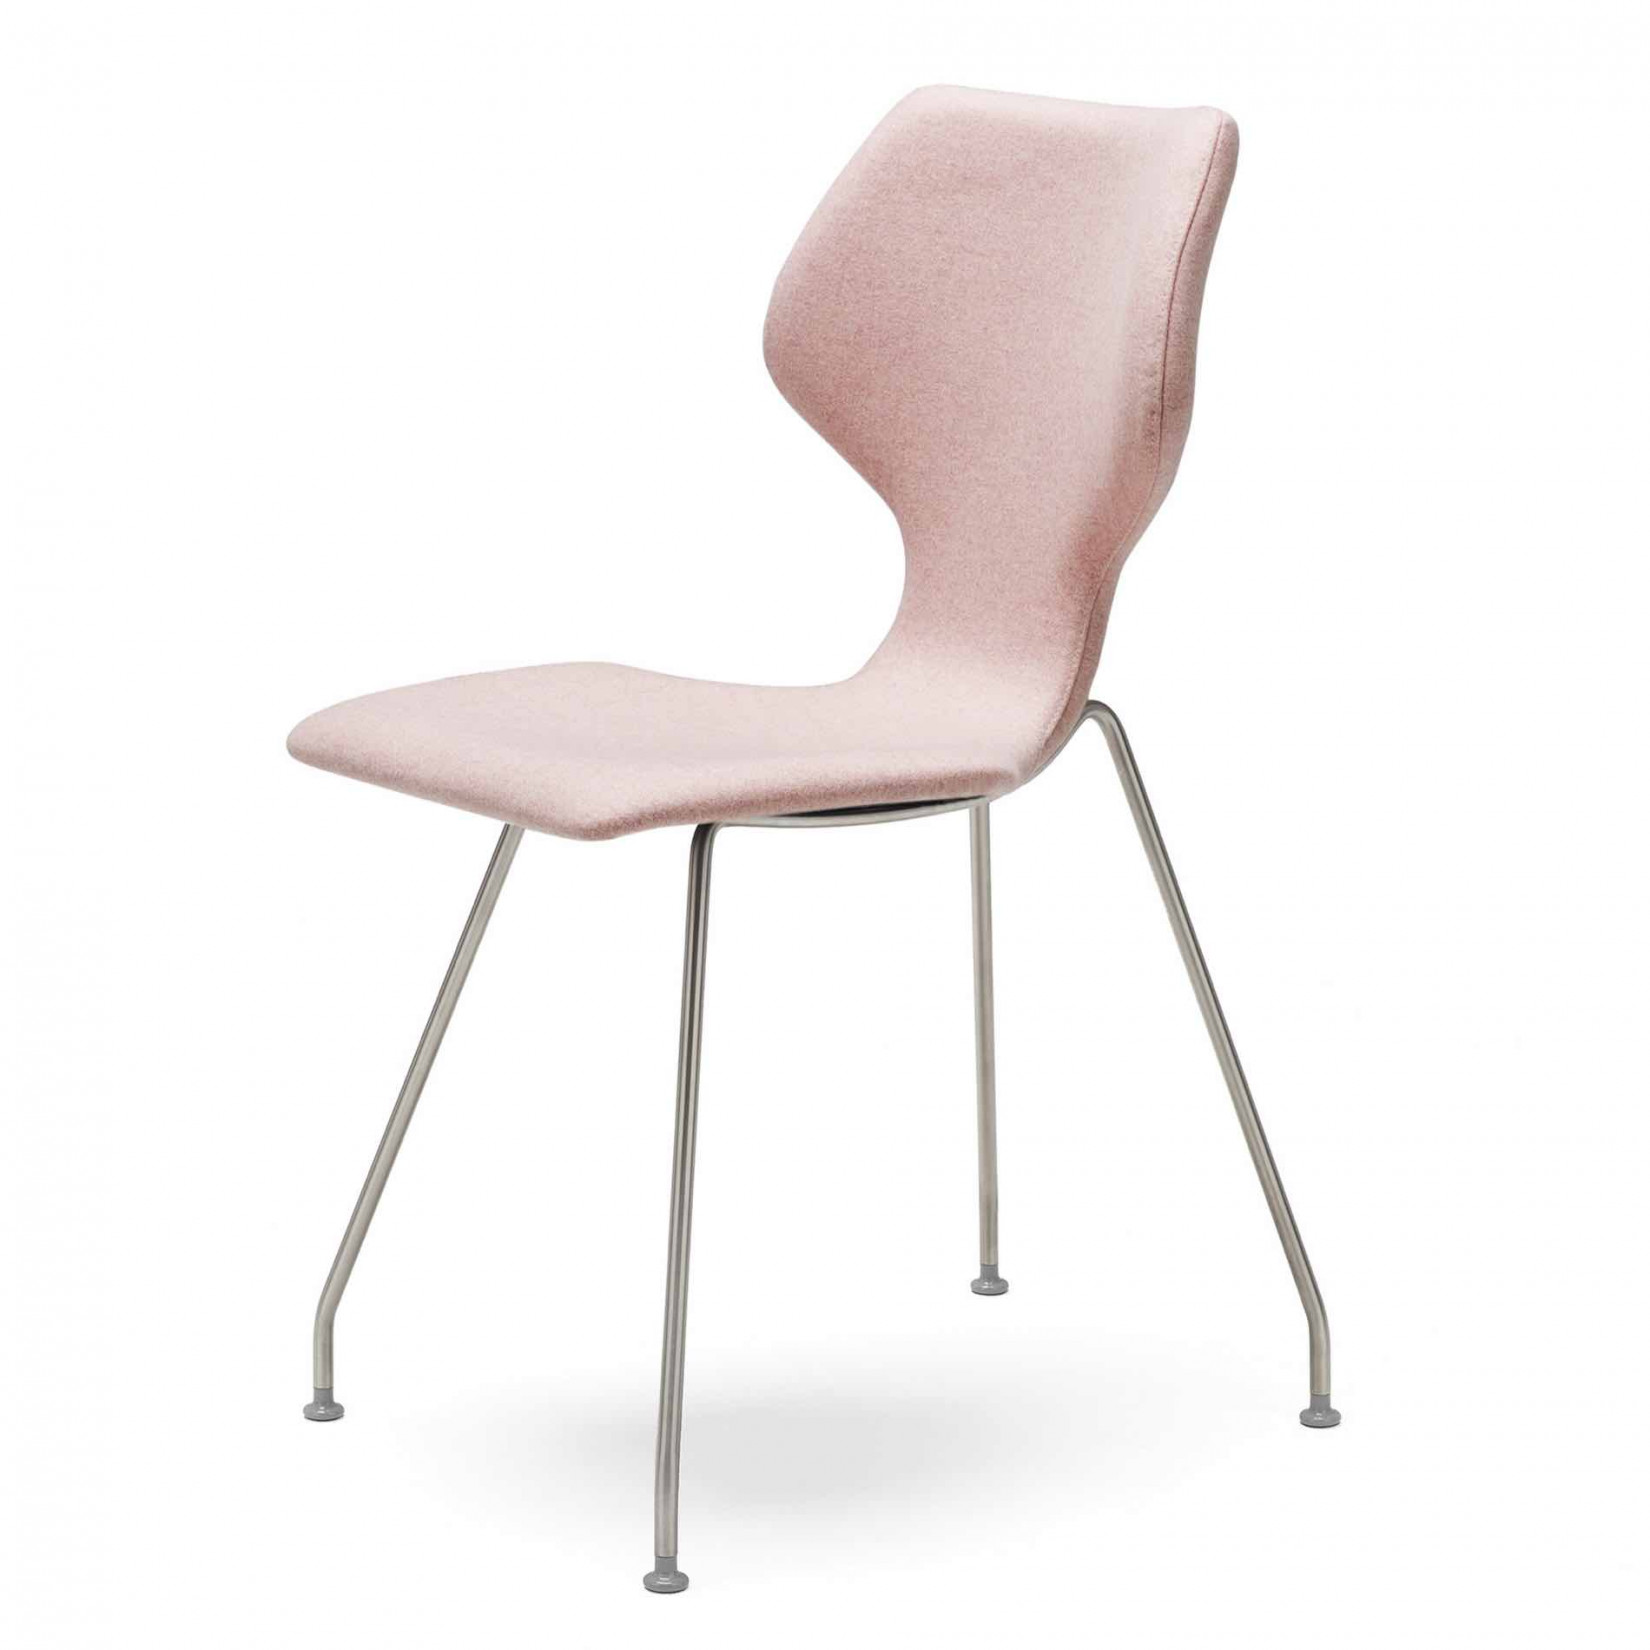 Hover Omleiding Stuwkracht Design on Stock Cavalletta stoelen